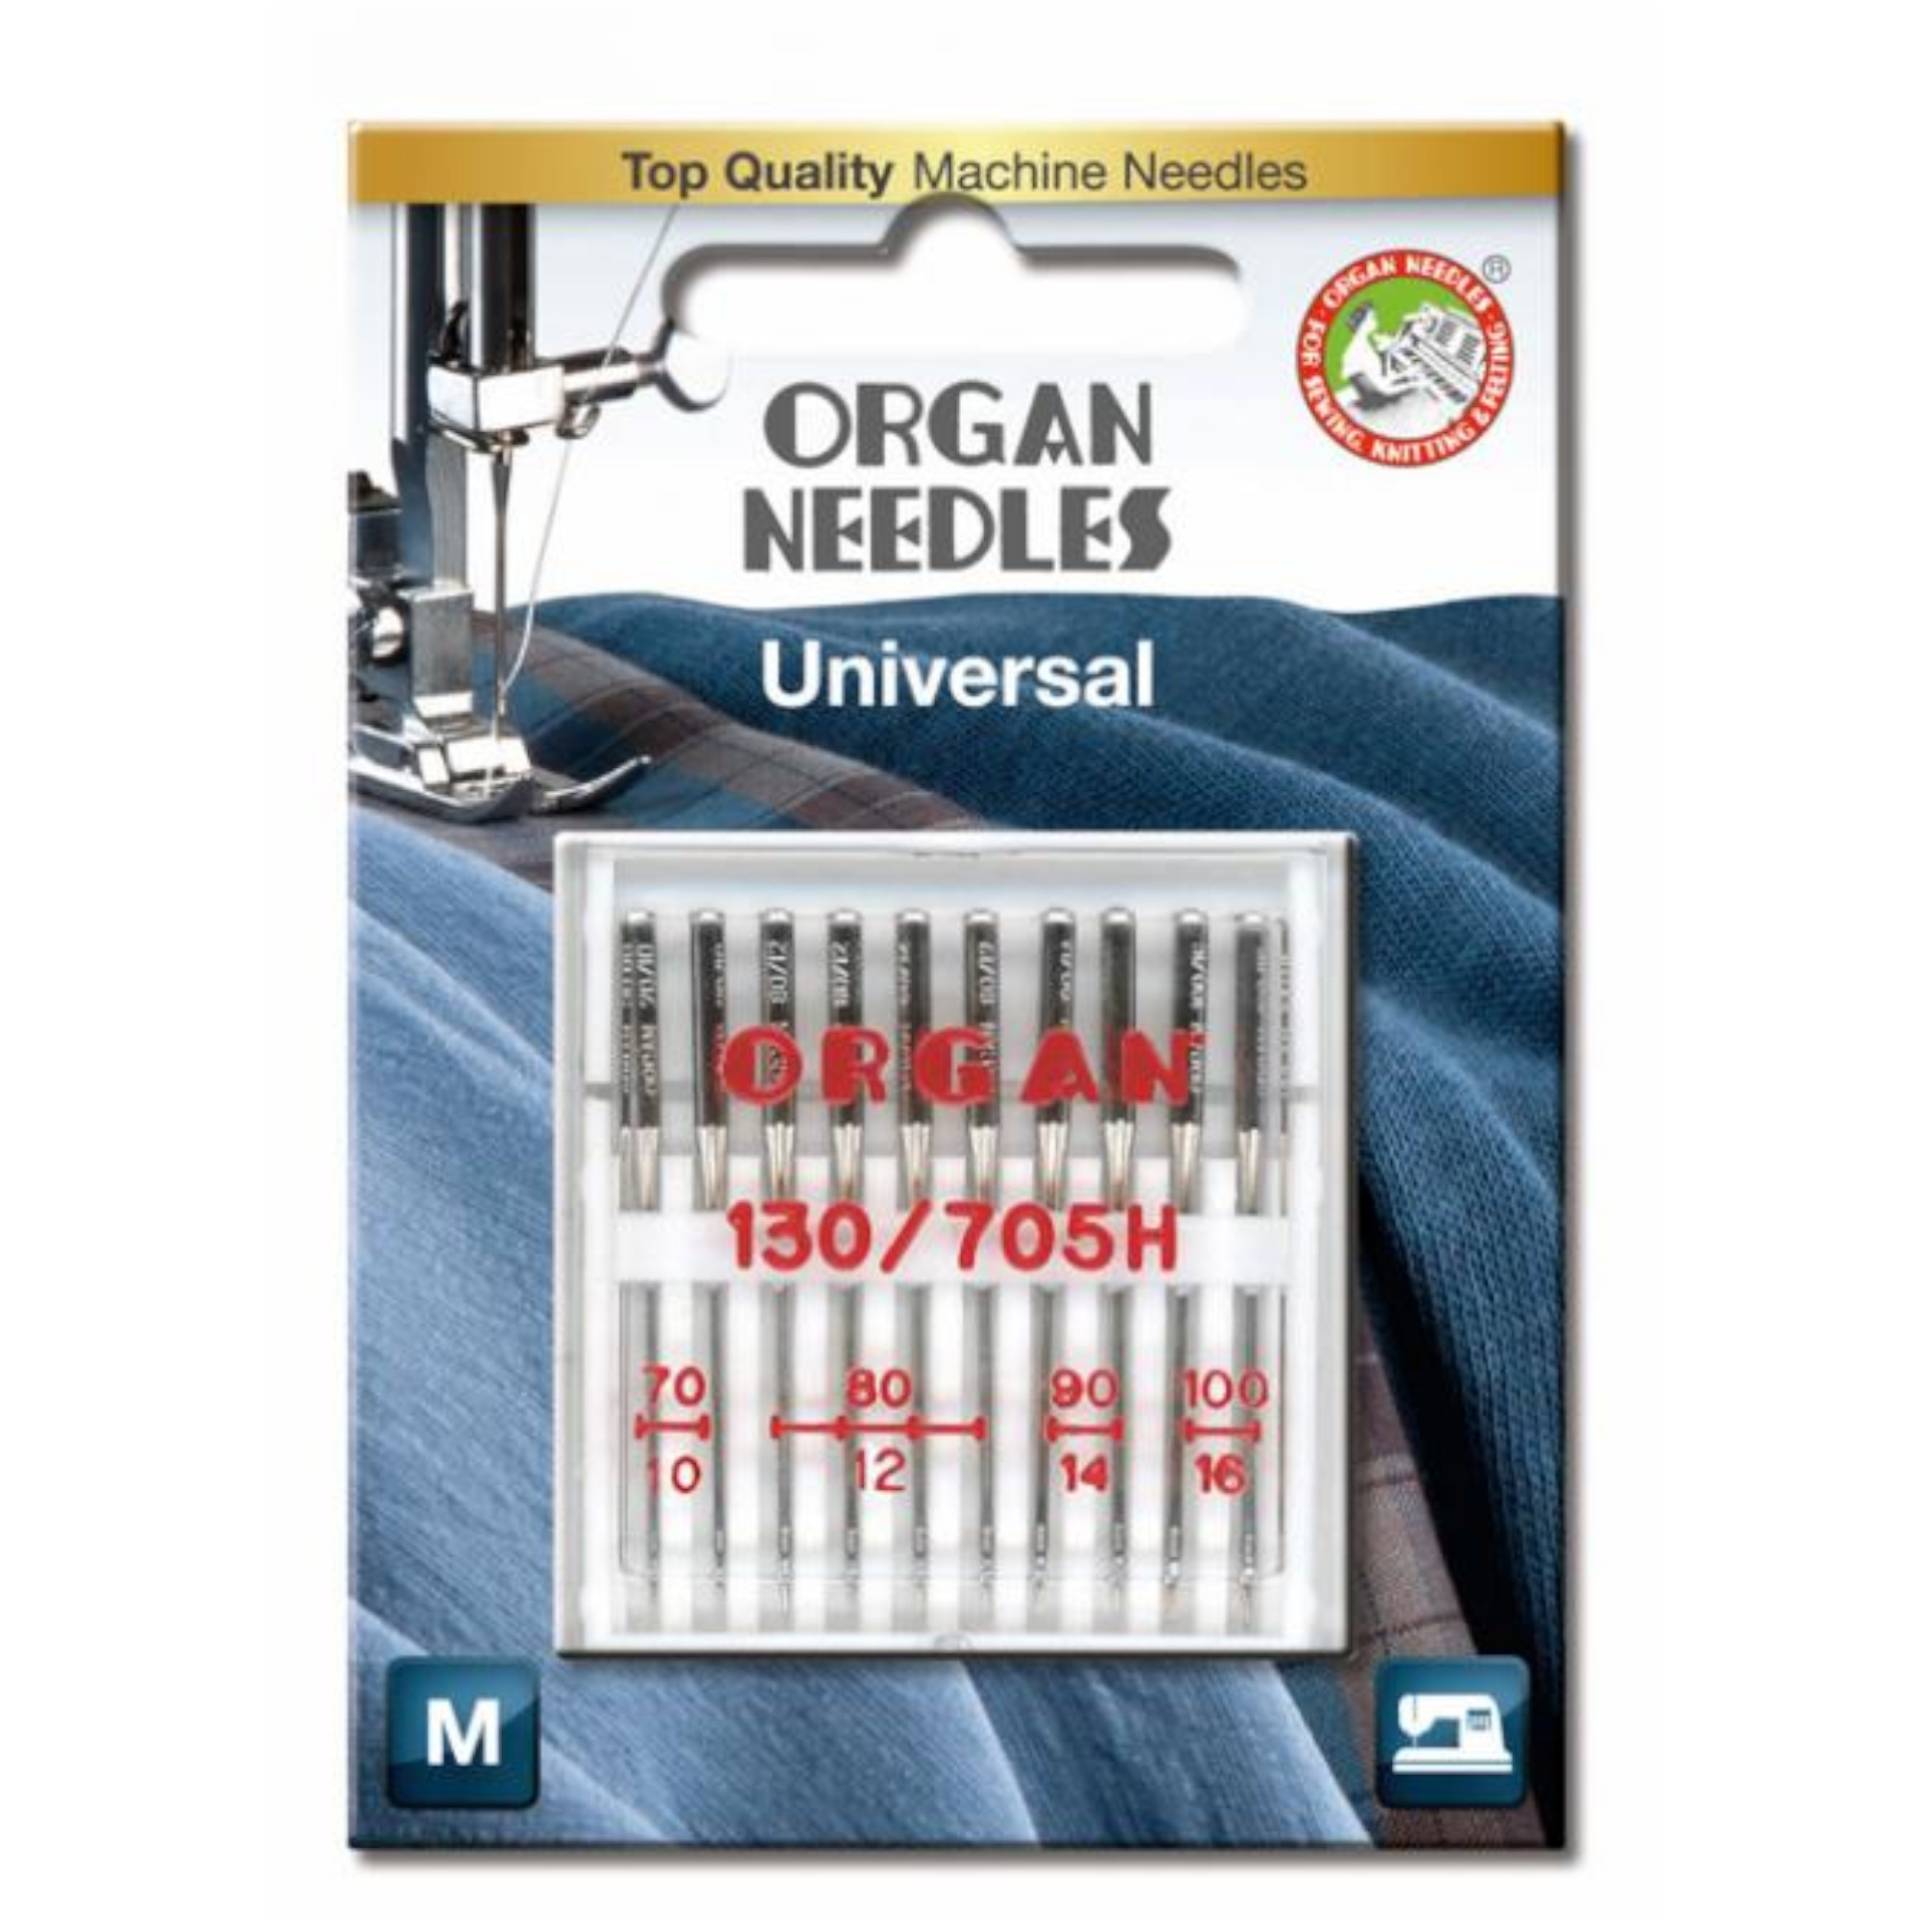 10 Organ Nähmaschinennadeln 130/705 H, Universal 70-100 von Stoffe Hemmers